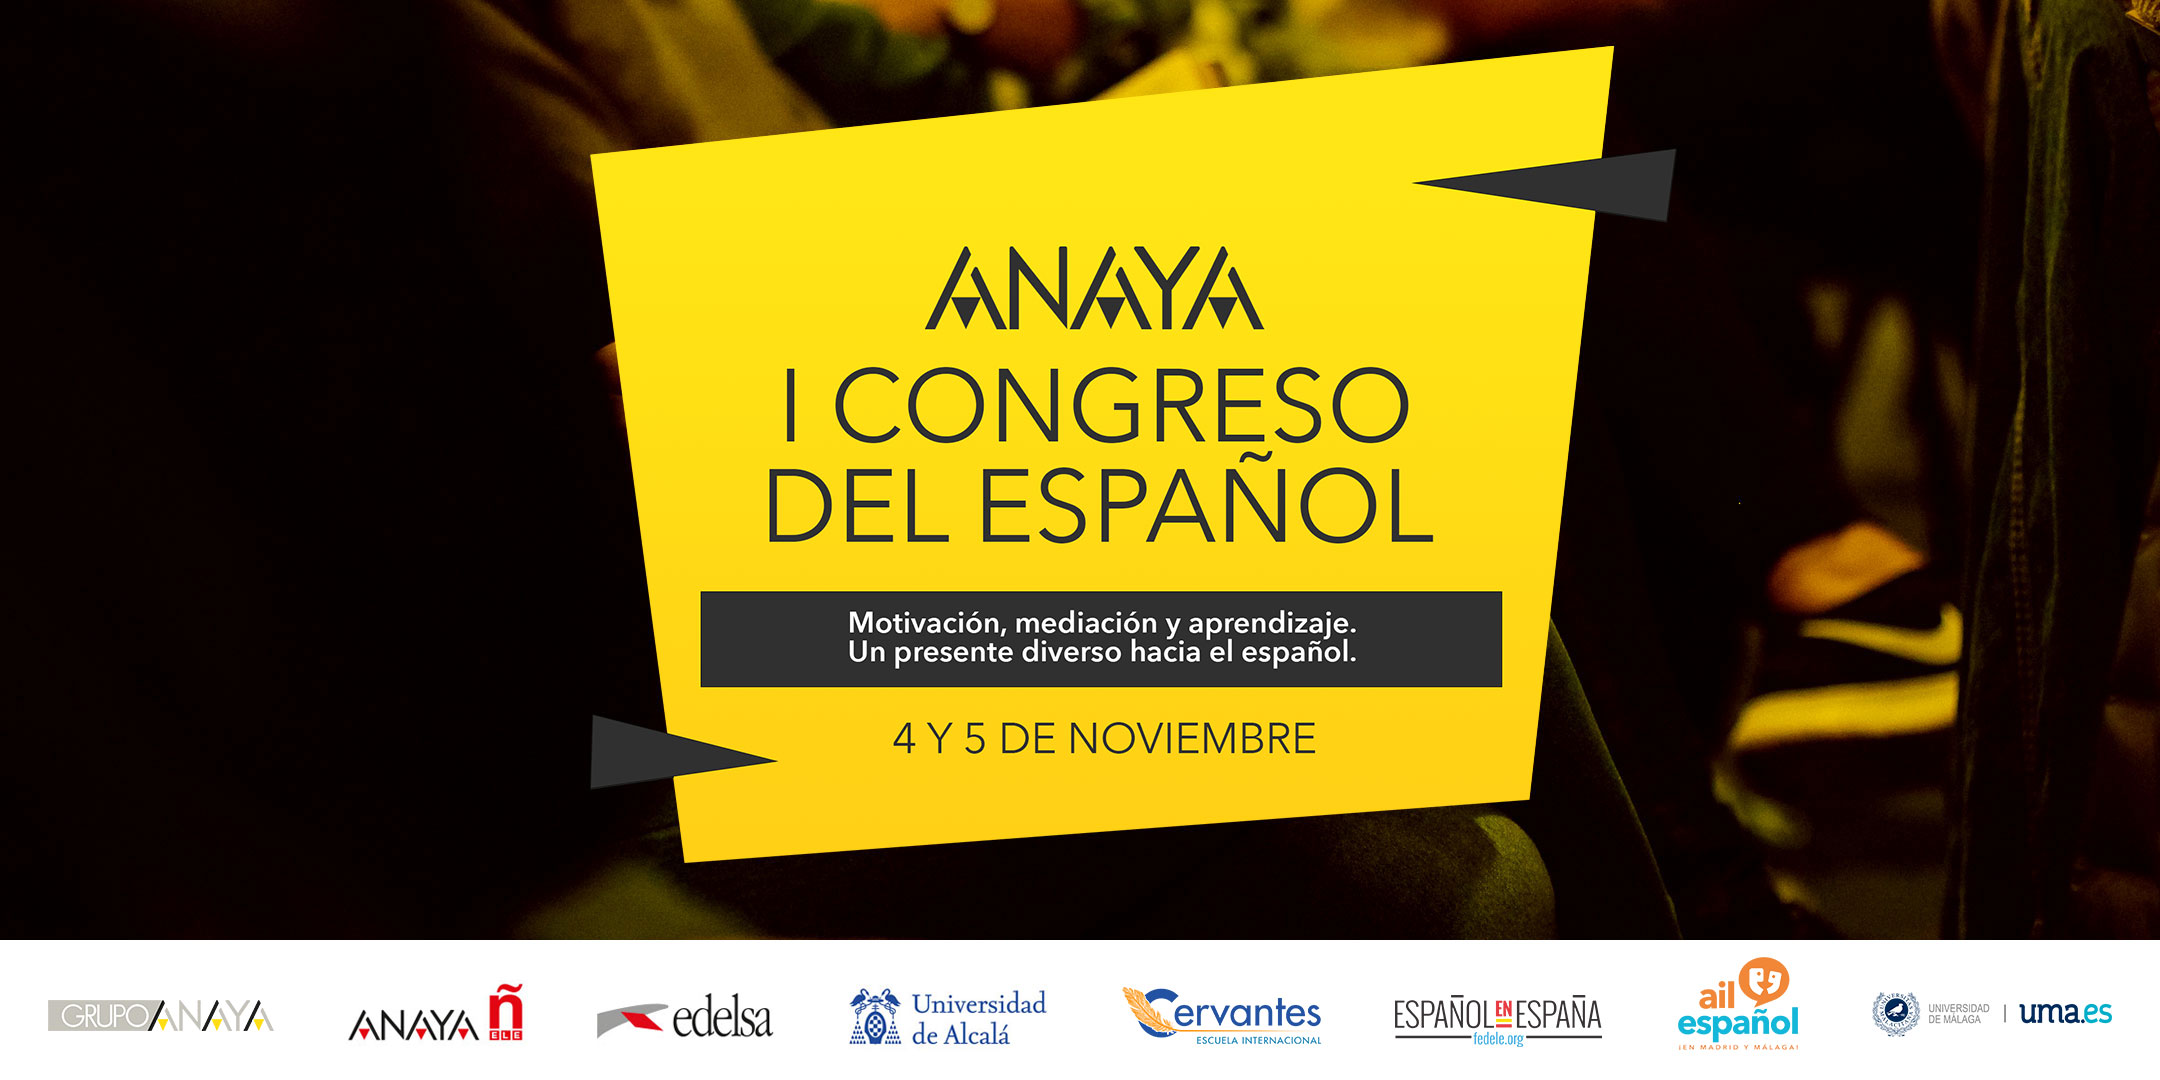 Congreso Anaya del español